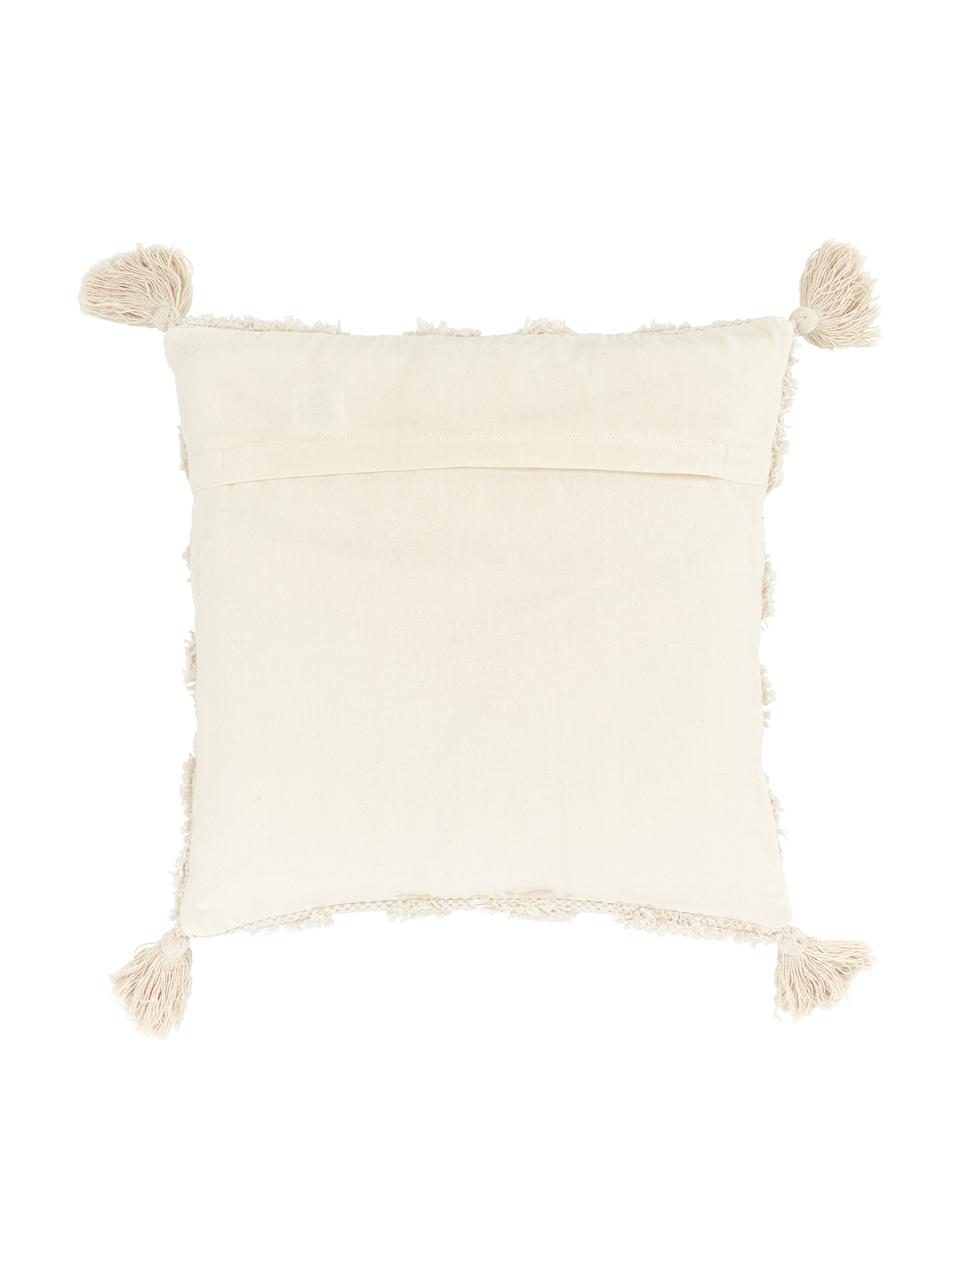 Kissenhülle Karina mit dekorativer Verzierung und Quasten, 100% Baumwolle, Beige, B 45 x L 45 cm